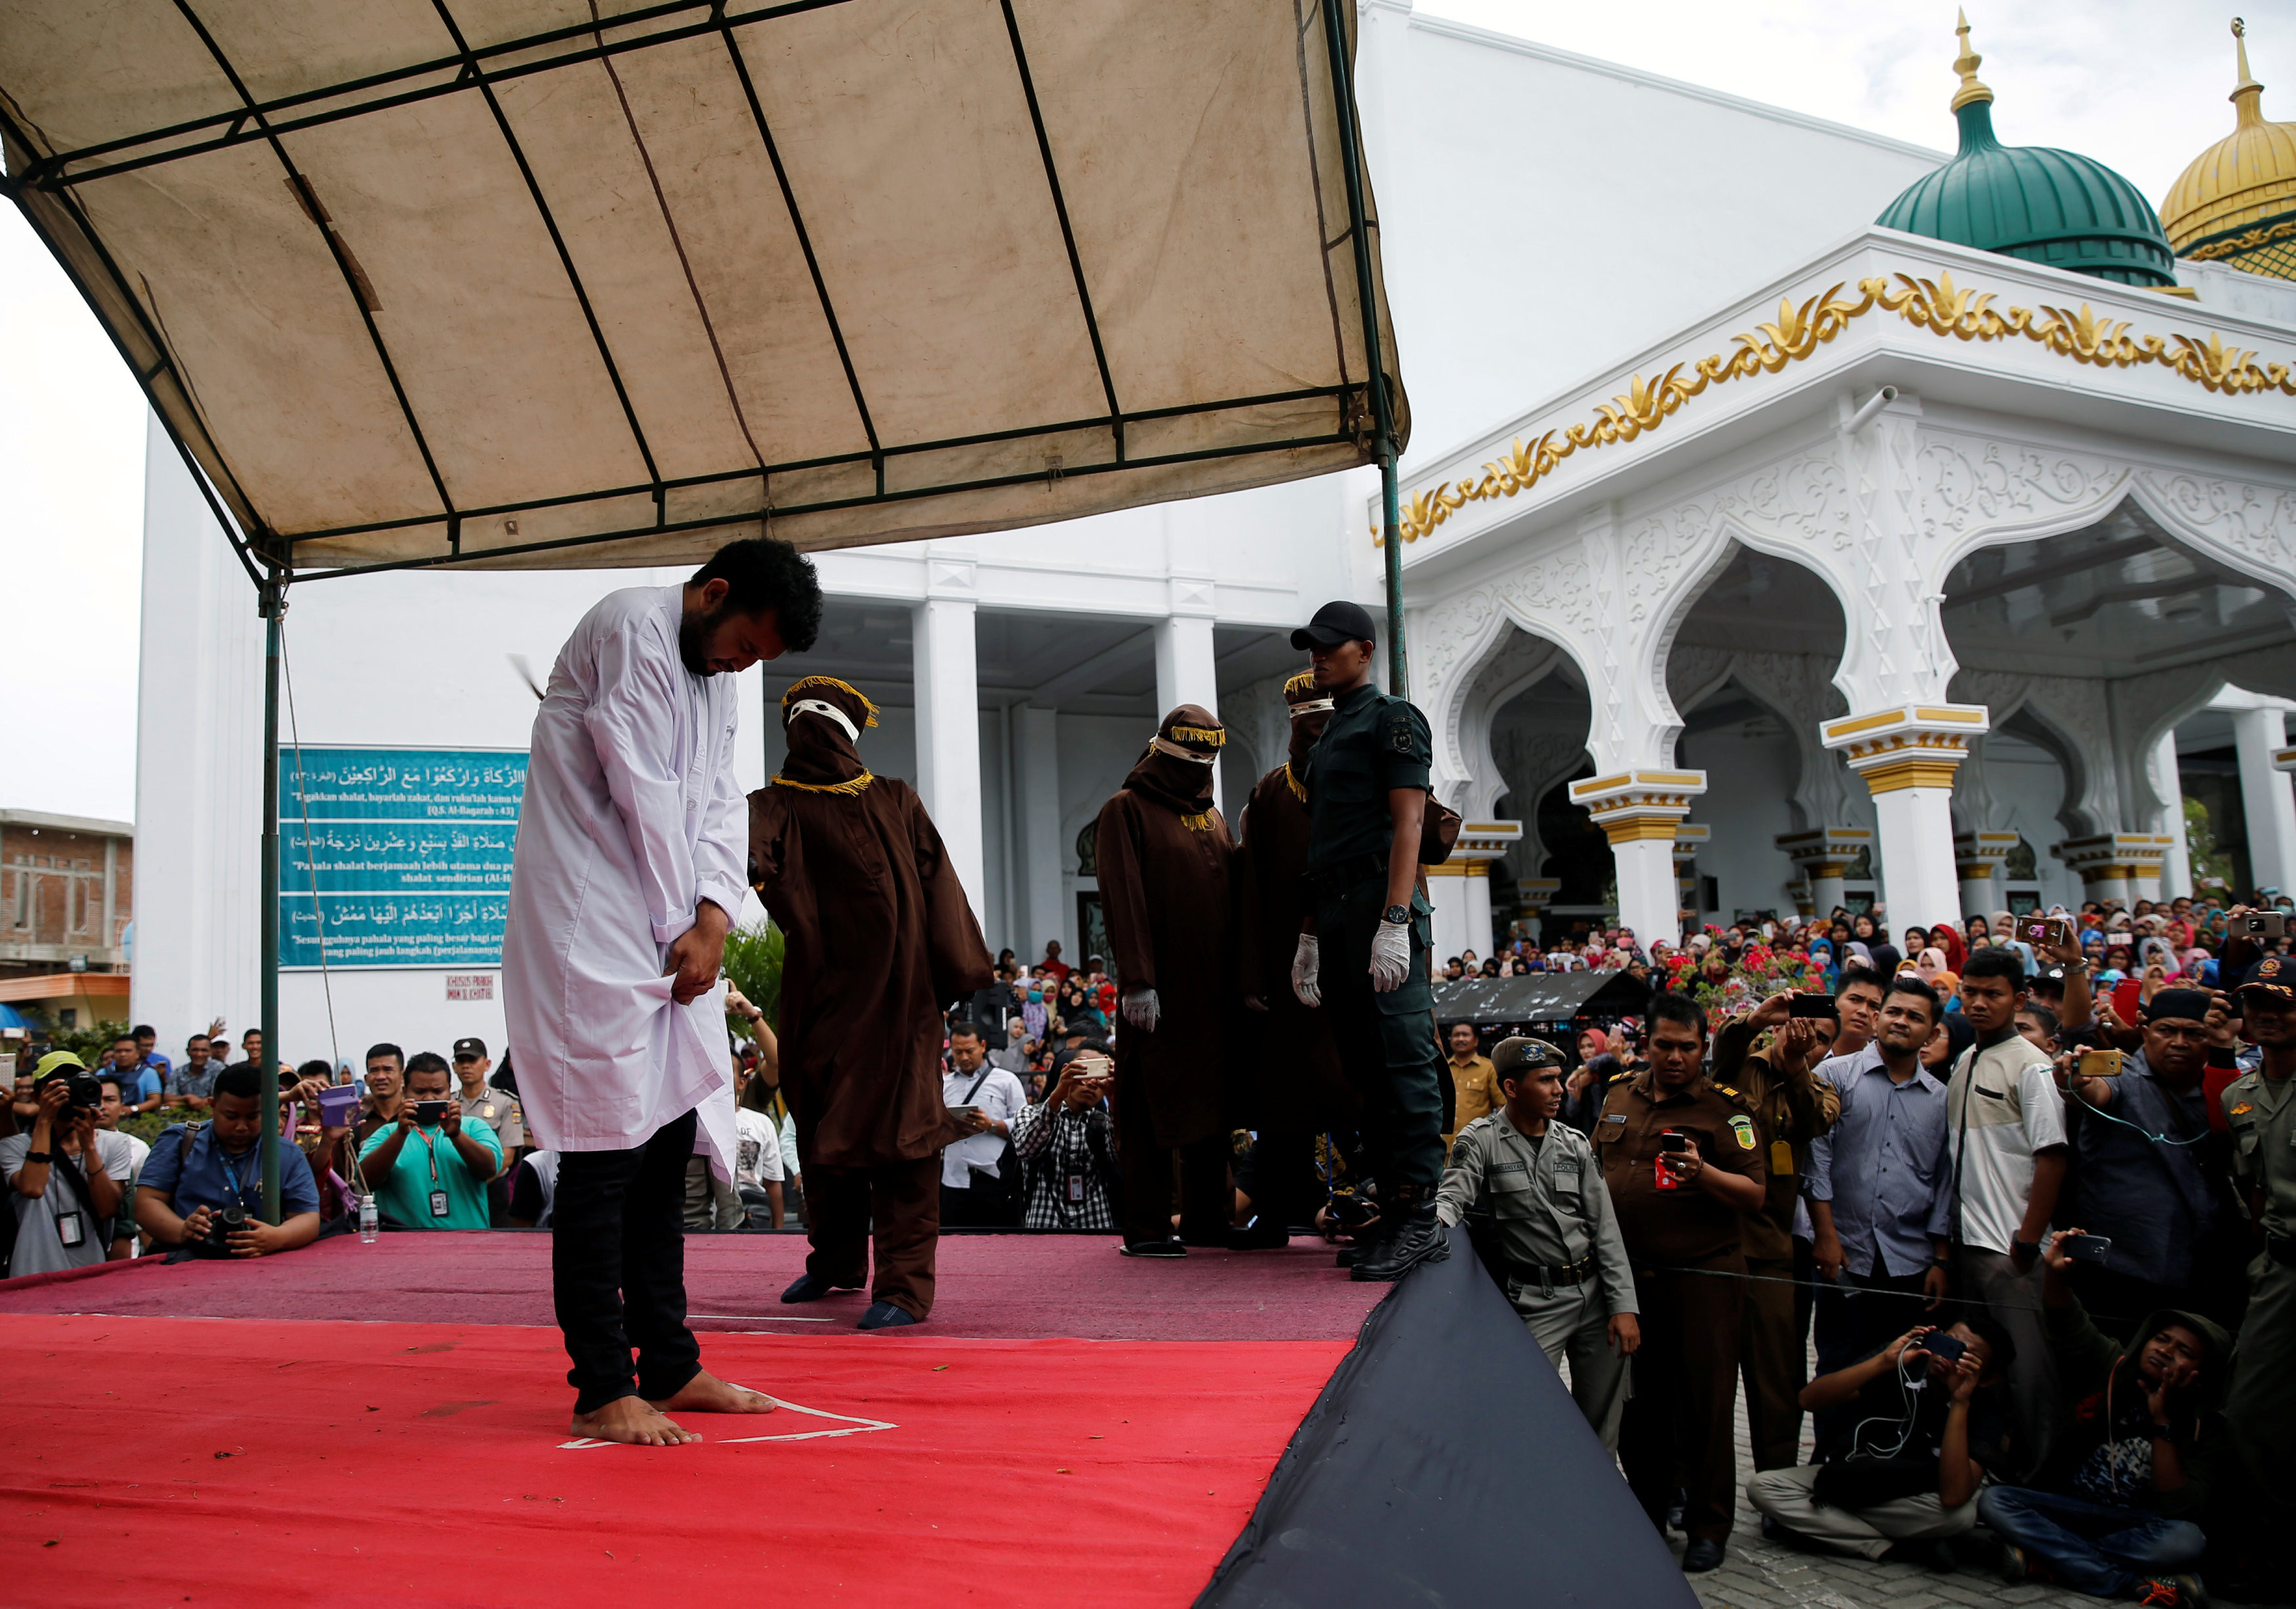 印尼赌徒清真寺当众受鞭刑 上千人围观 - 中国网山东图片新闻 - 中国网 • 山东